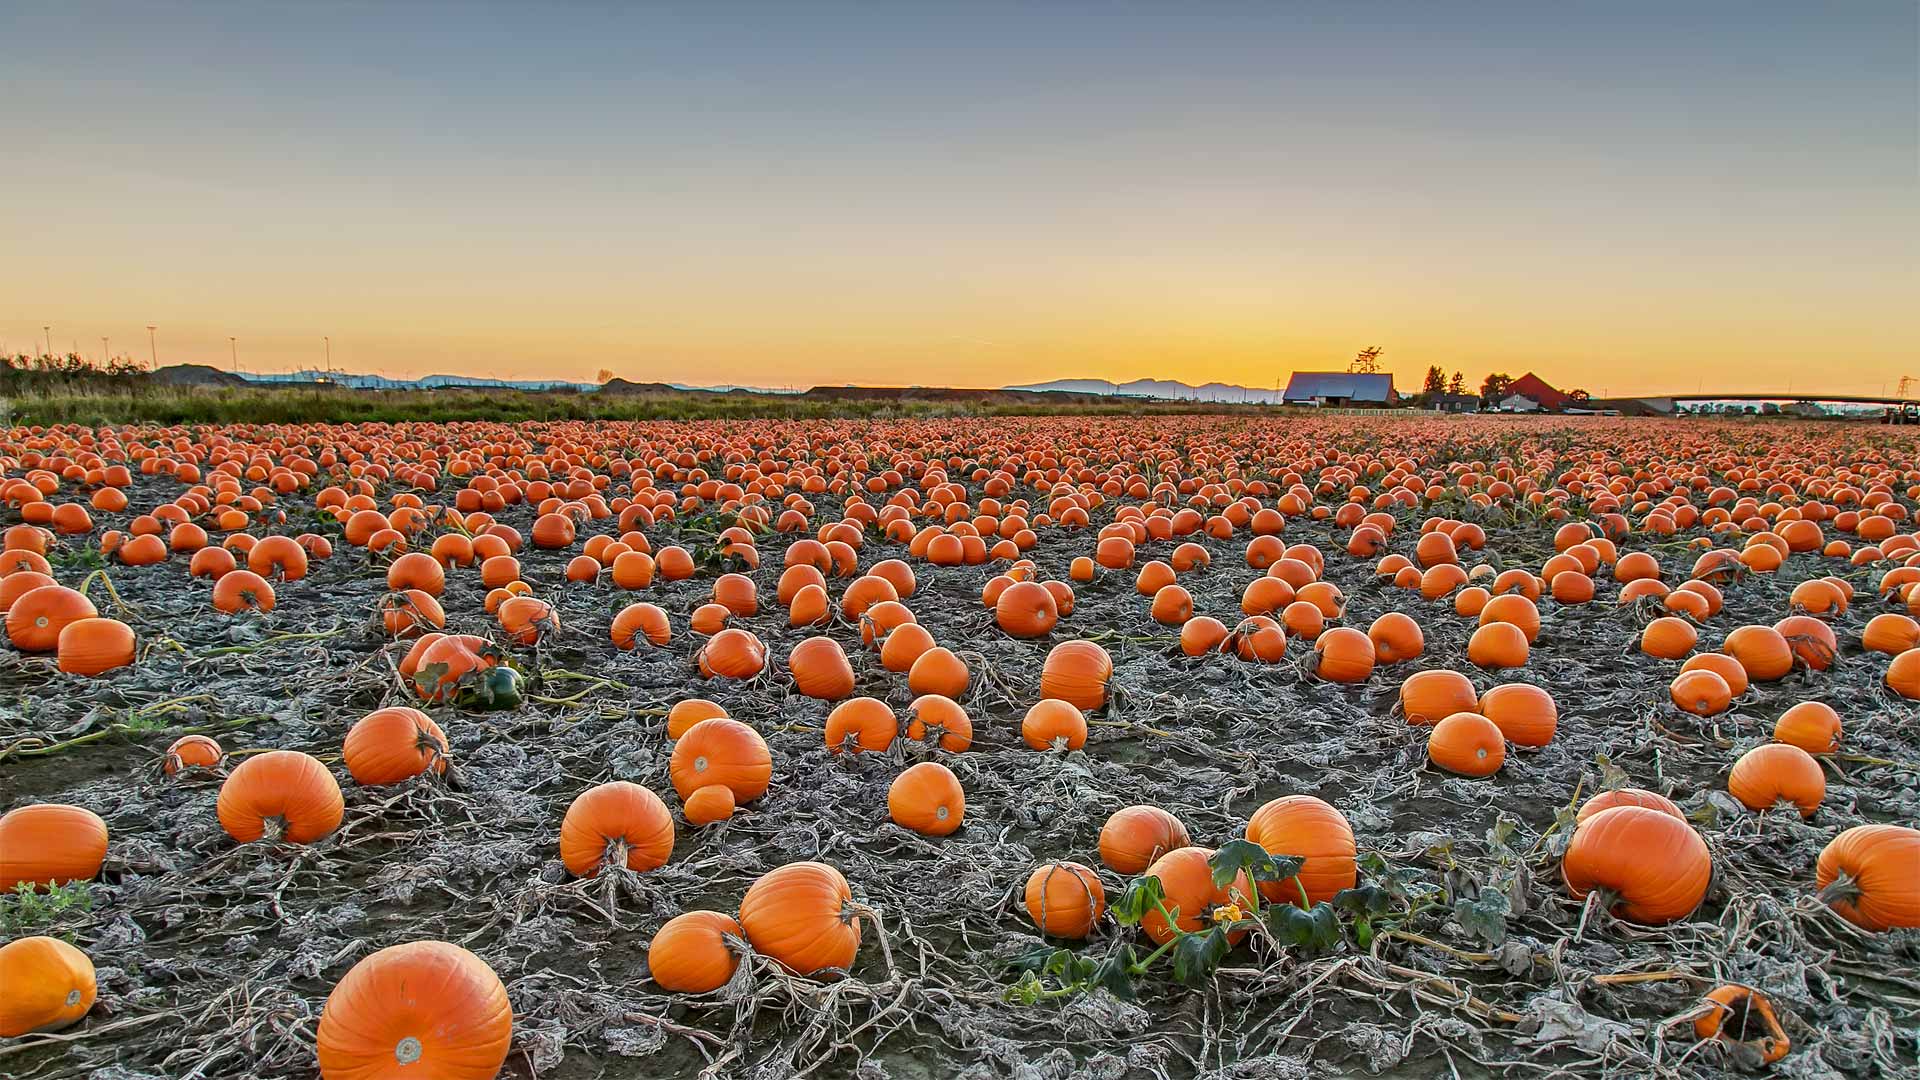 A pumpkin patch in British Columbia, Canada - James Chen/Shutterstock)